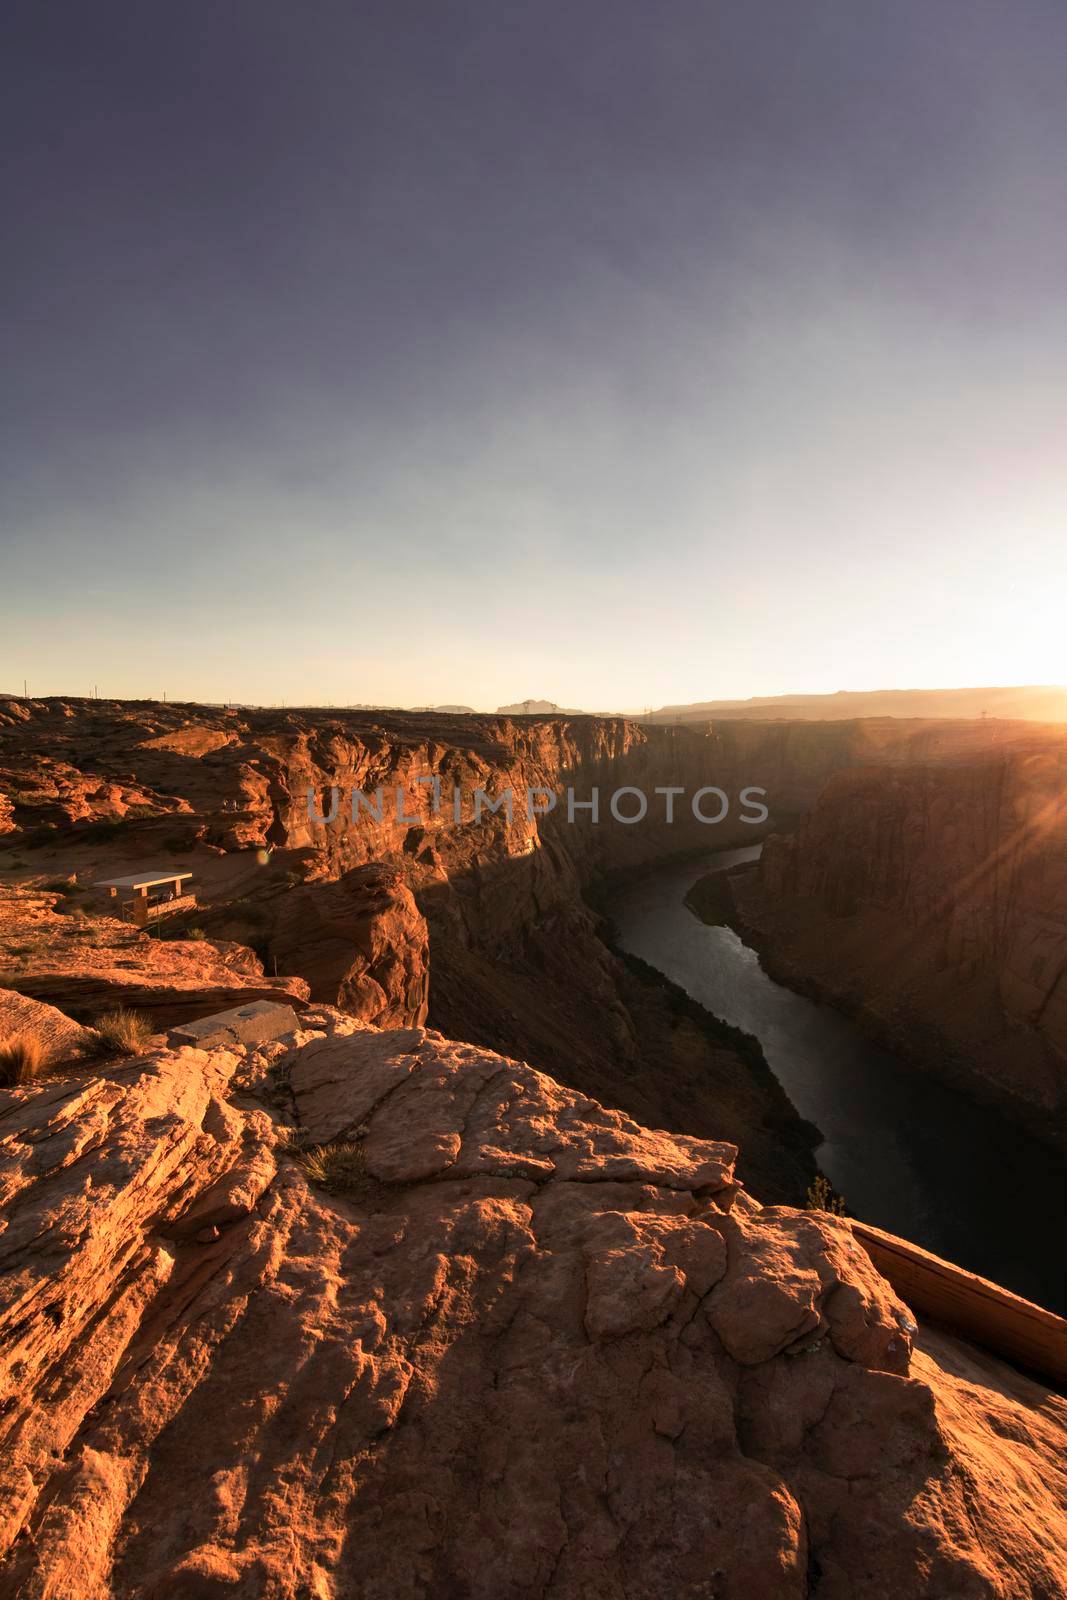 Colorado river in Page Arizona by ValentimePix